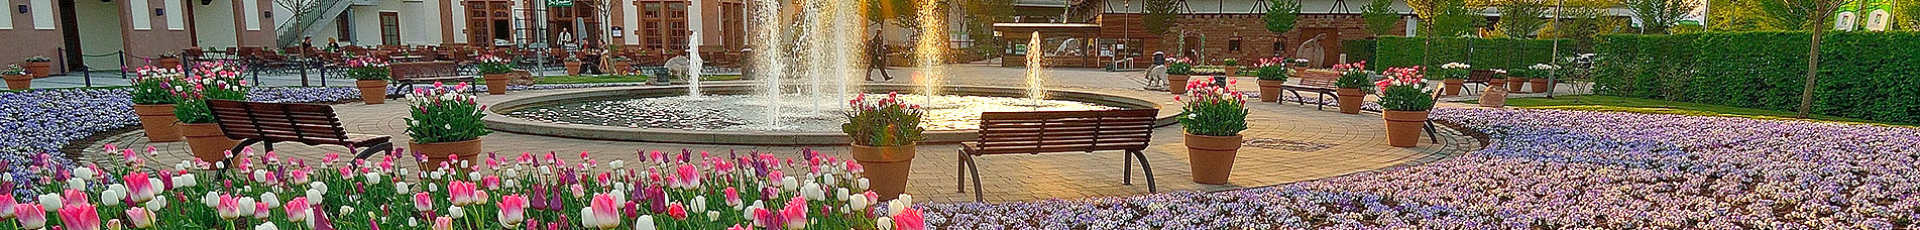 Frühlingsblumen in der Abendsonne um den Brunnen am Eingang zur Gartenschau